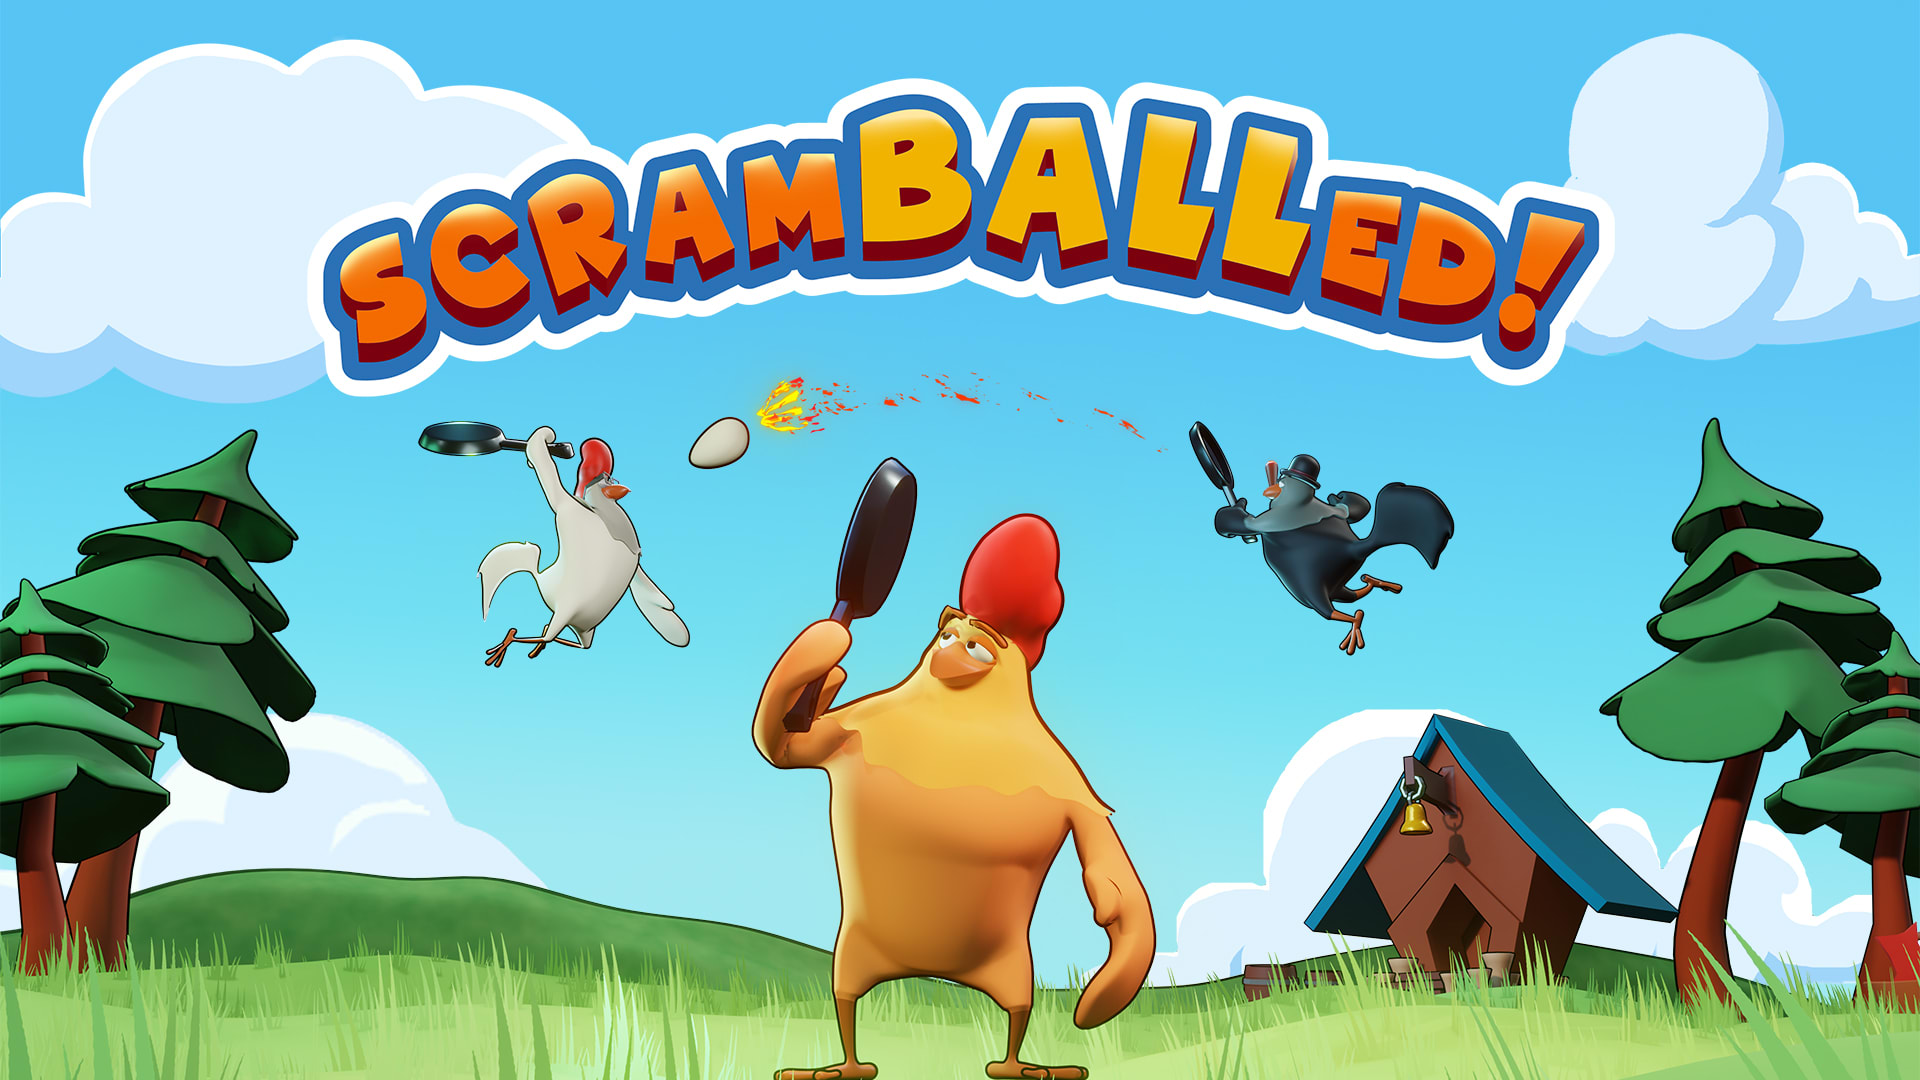 Scramballed: Chicken Tennis! 1